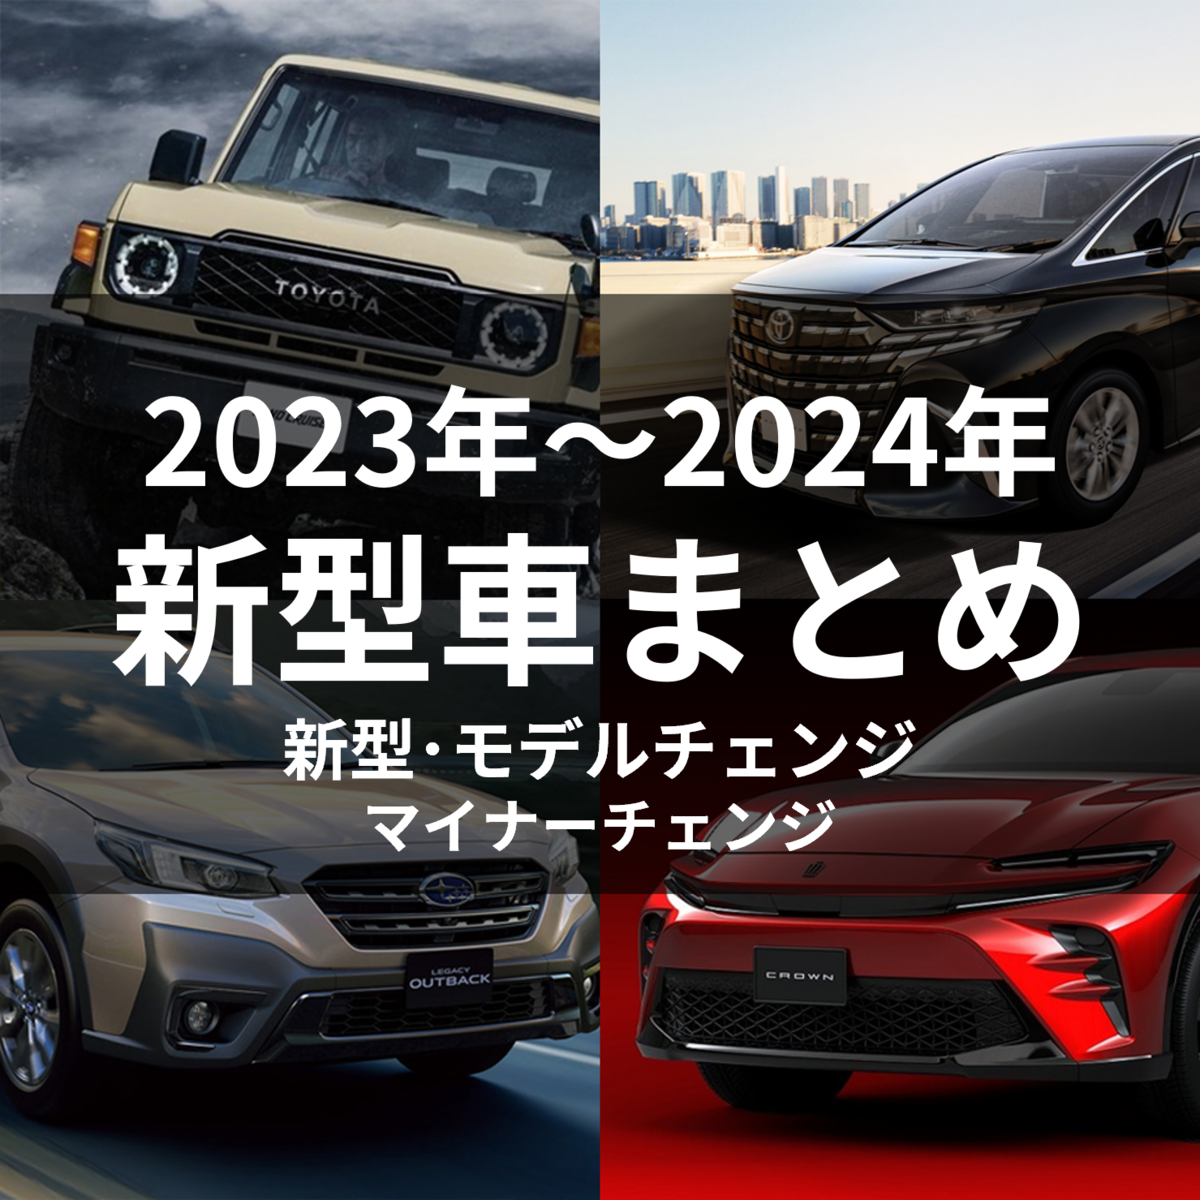 2023～2024年 新車情報】新型車とモデルチェンジ予定の車を総まとめ